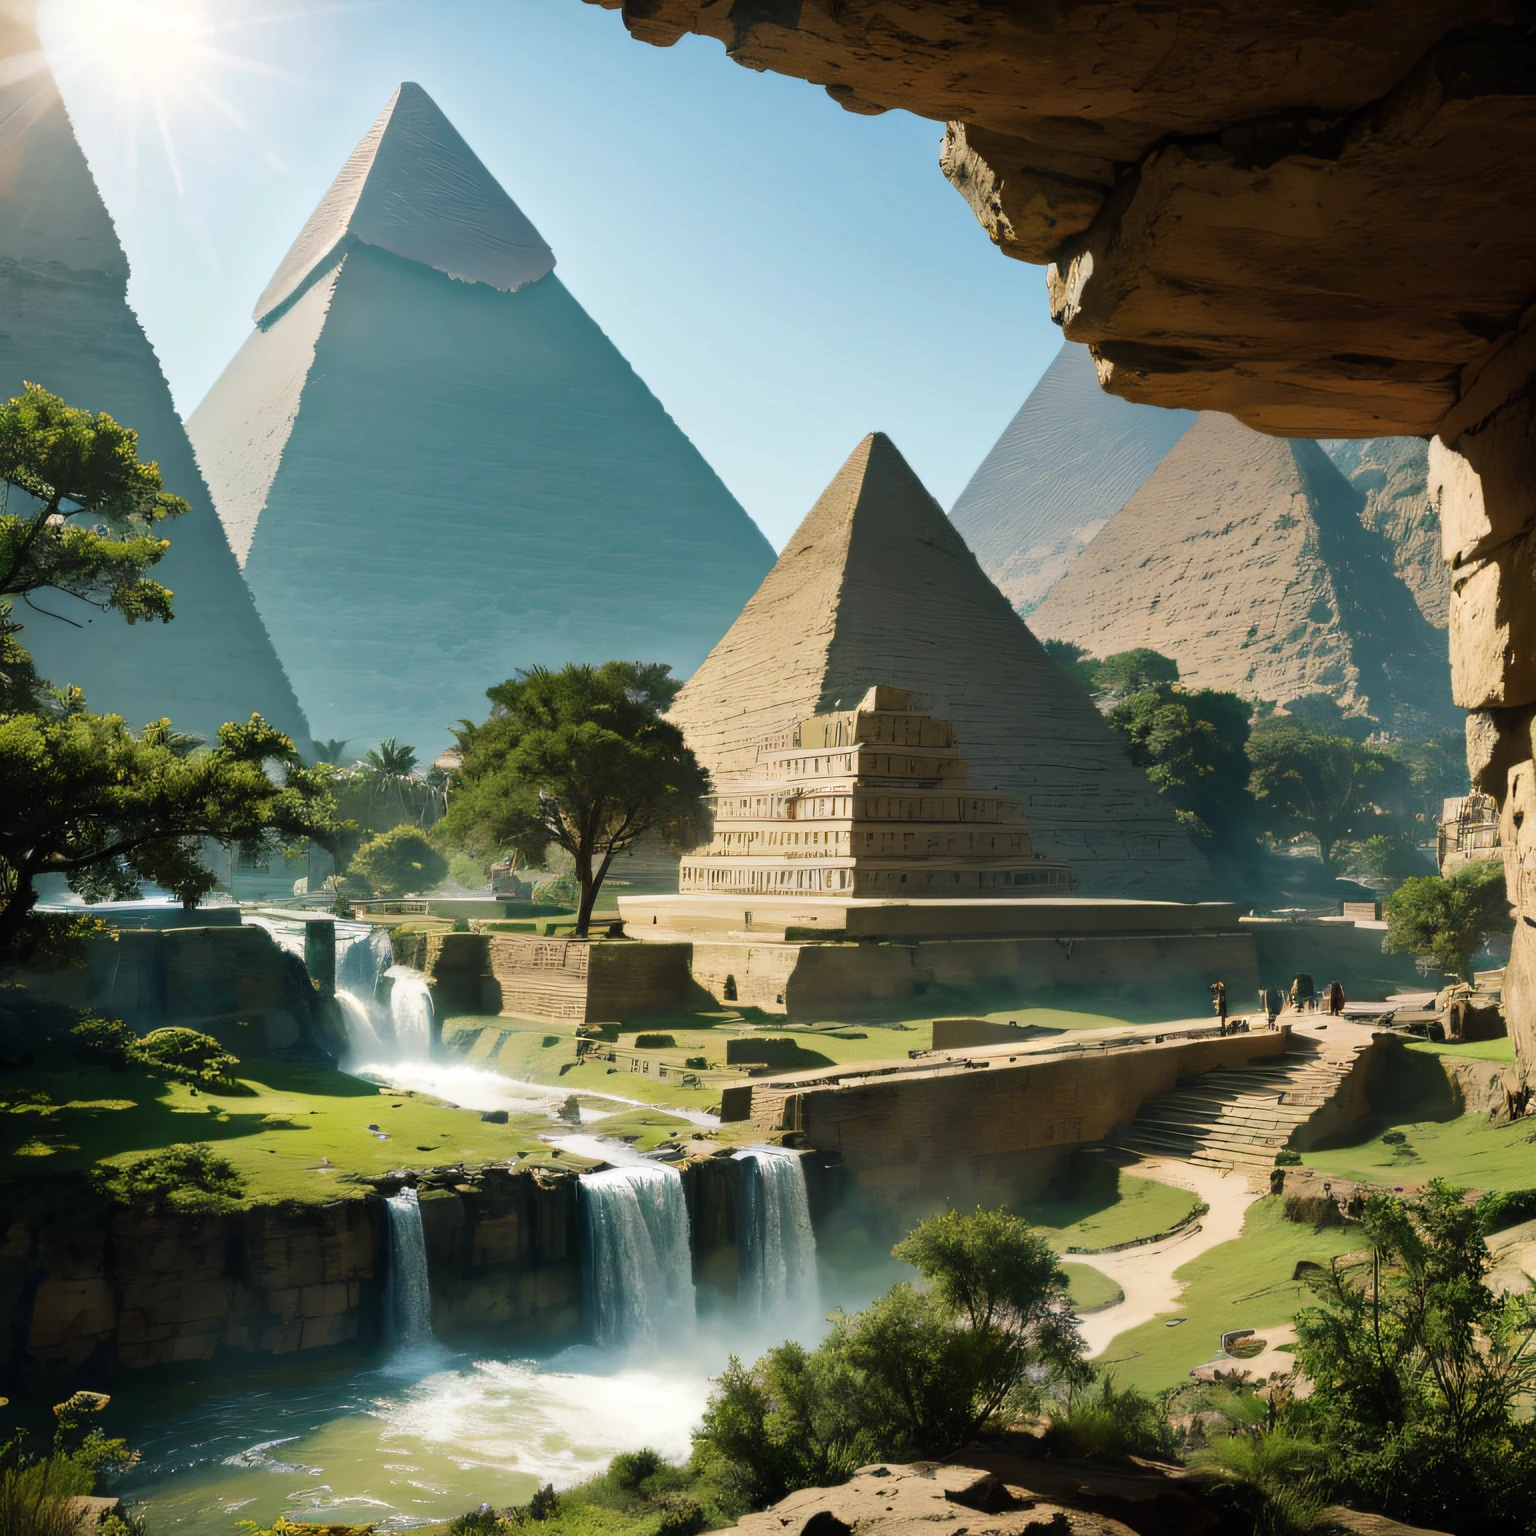 (거대한 피라미드) 이집트, 산에서 나온 돌인의 기념비가 계곡에 있다 ,햇빛이 비치는 푸른 숲의 폭포 그림이 혼합되어 있습니다., 폭포, 놀라운 깊이, 숨막히는 예술의 걸작, 16,000, 현실적인 사진.